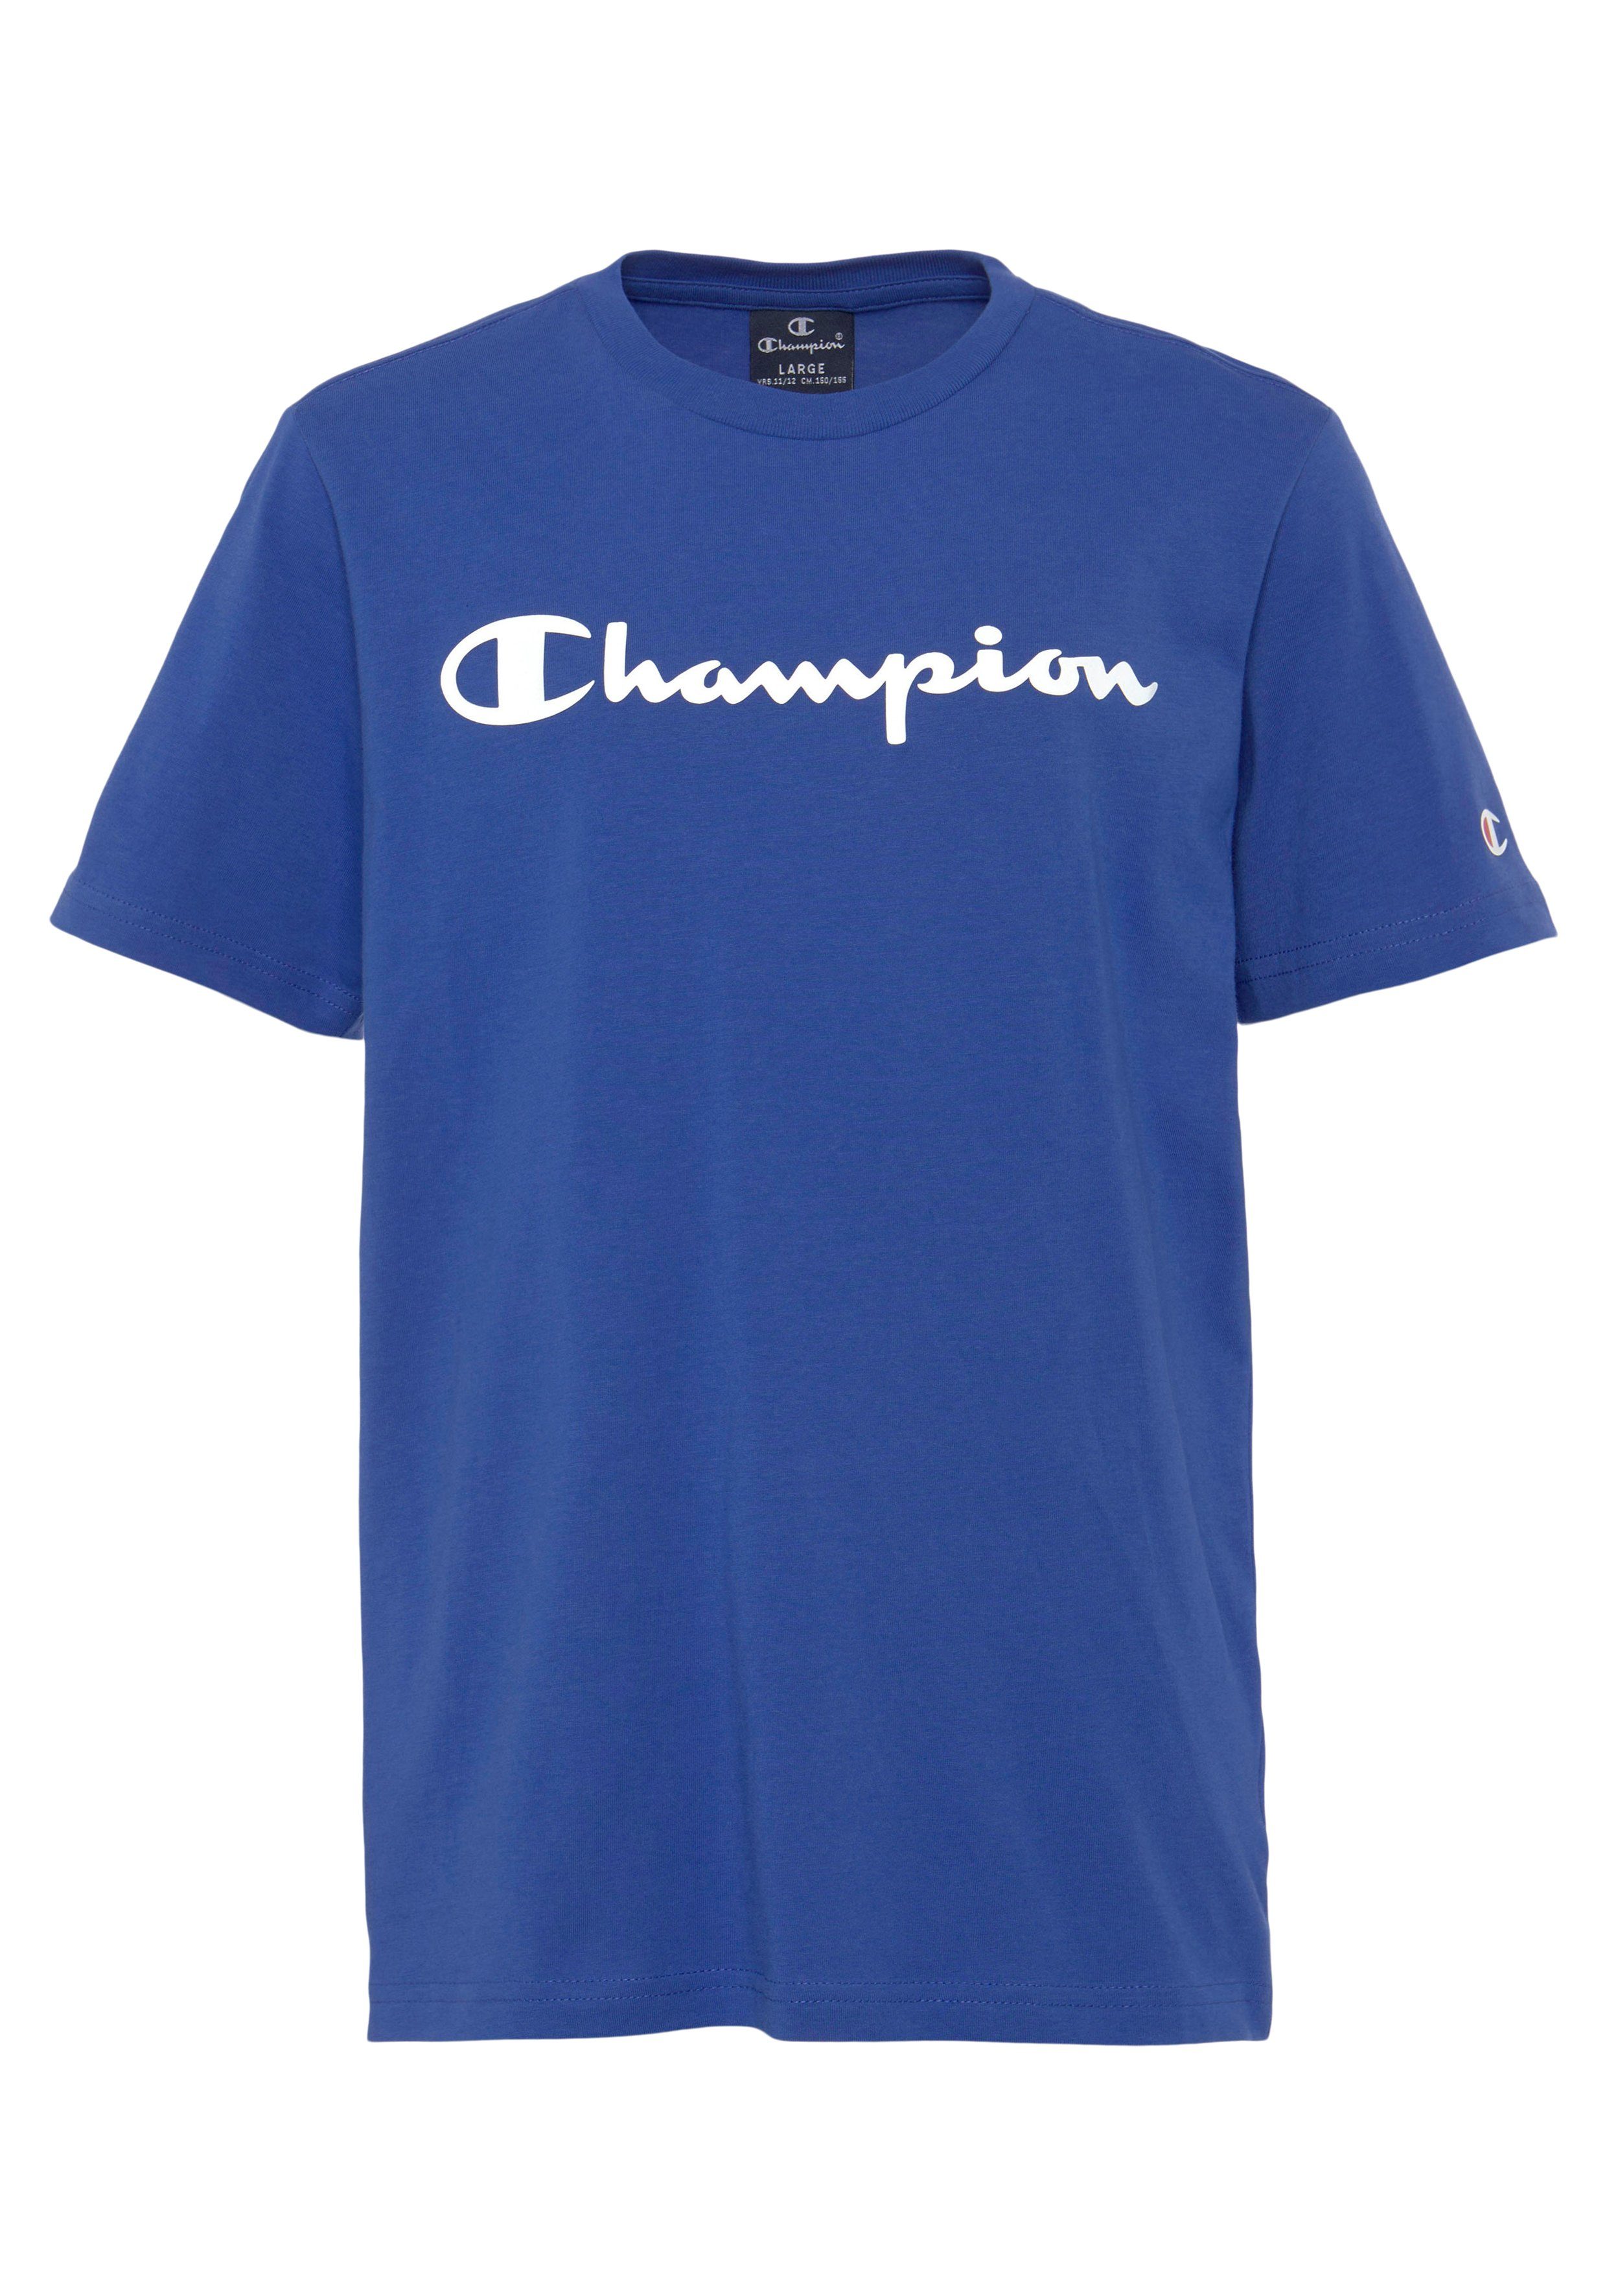 Champion T-Shirt Crewneck Kinder 2Pack blau/weiß T-Shirt für 